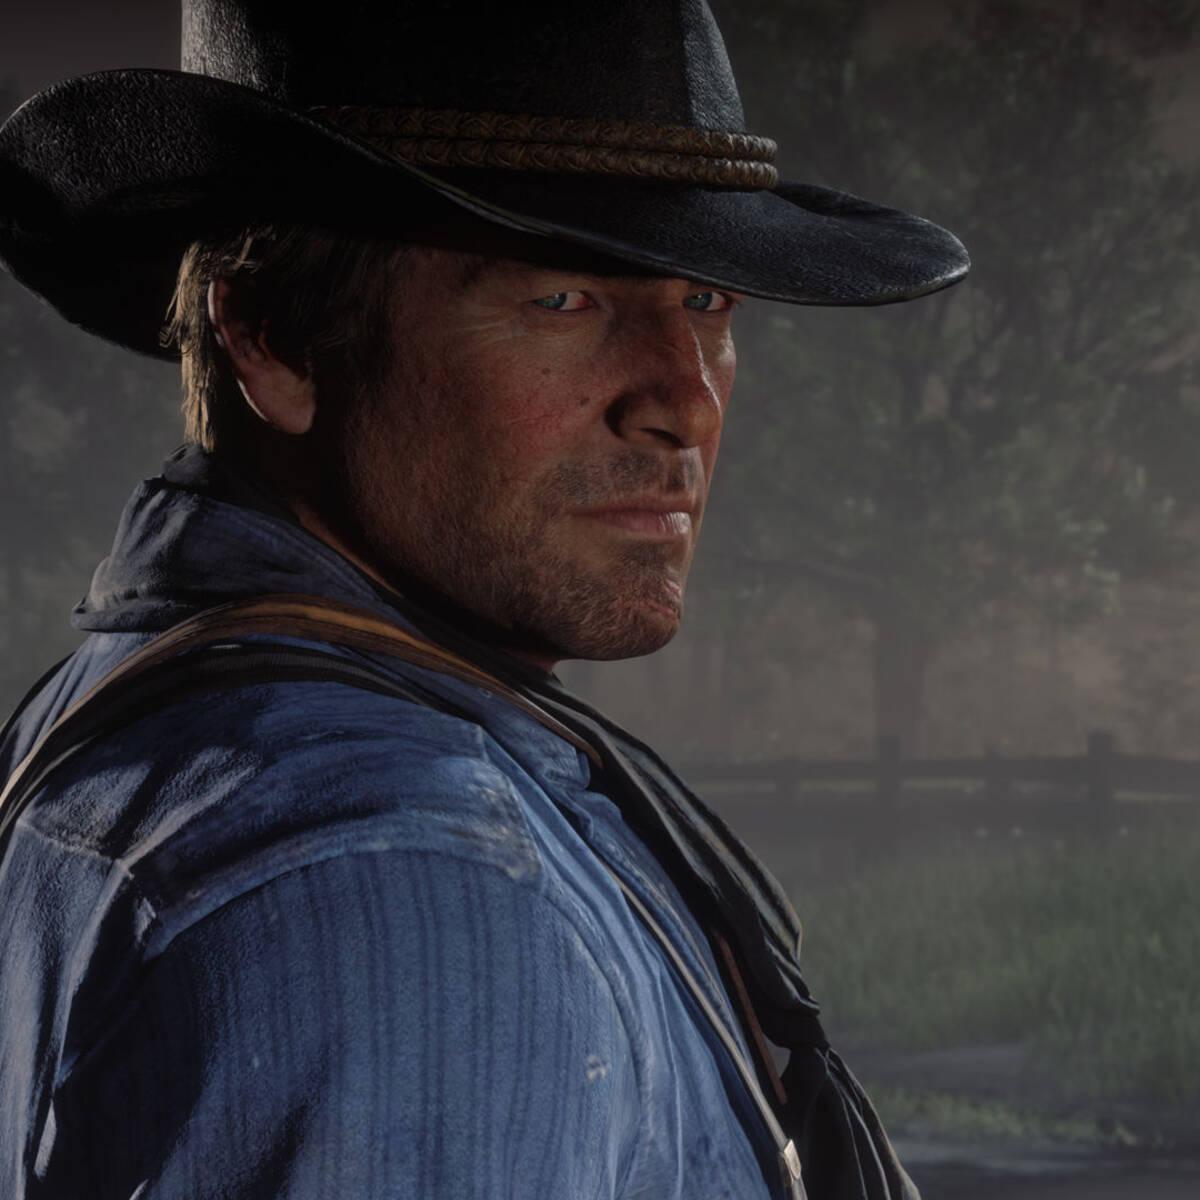 Red Dead Redemption 2 llegará a Steam este 5 de Diciembre